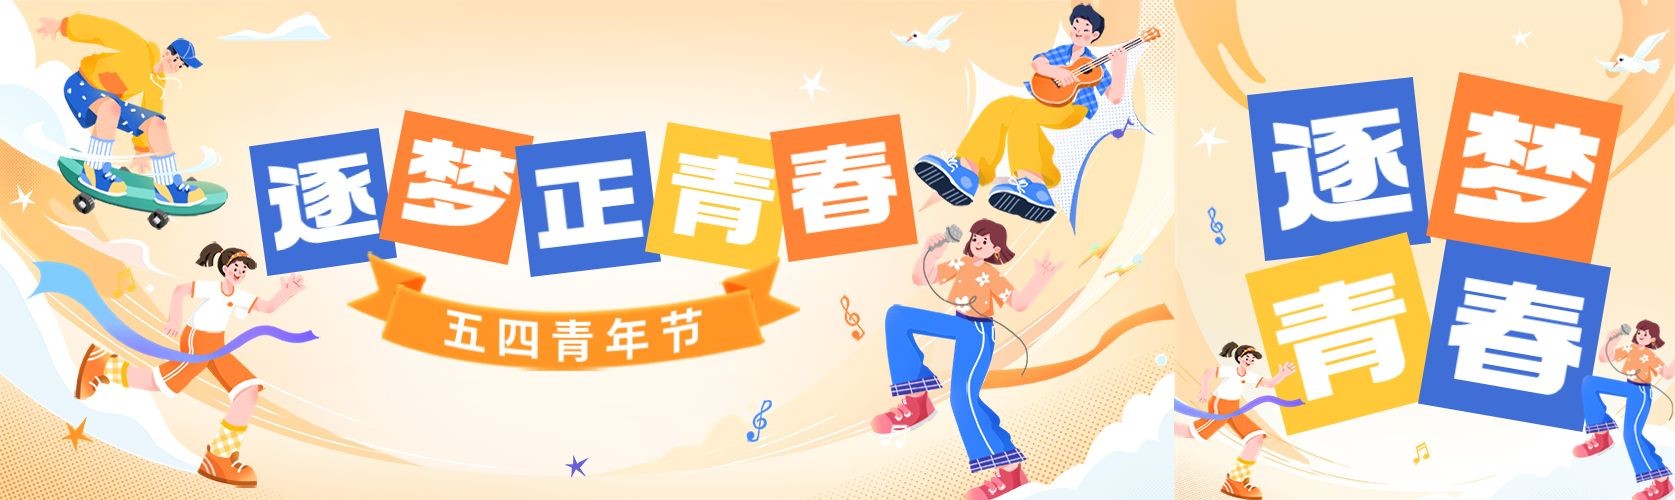 五四青年节节日祝福手绘插画公众号首次图预览效果